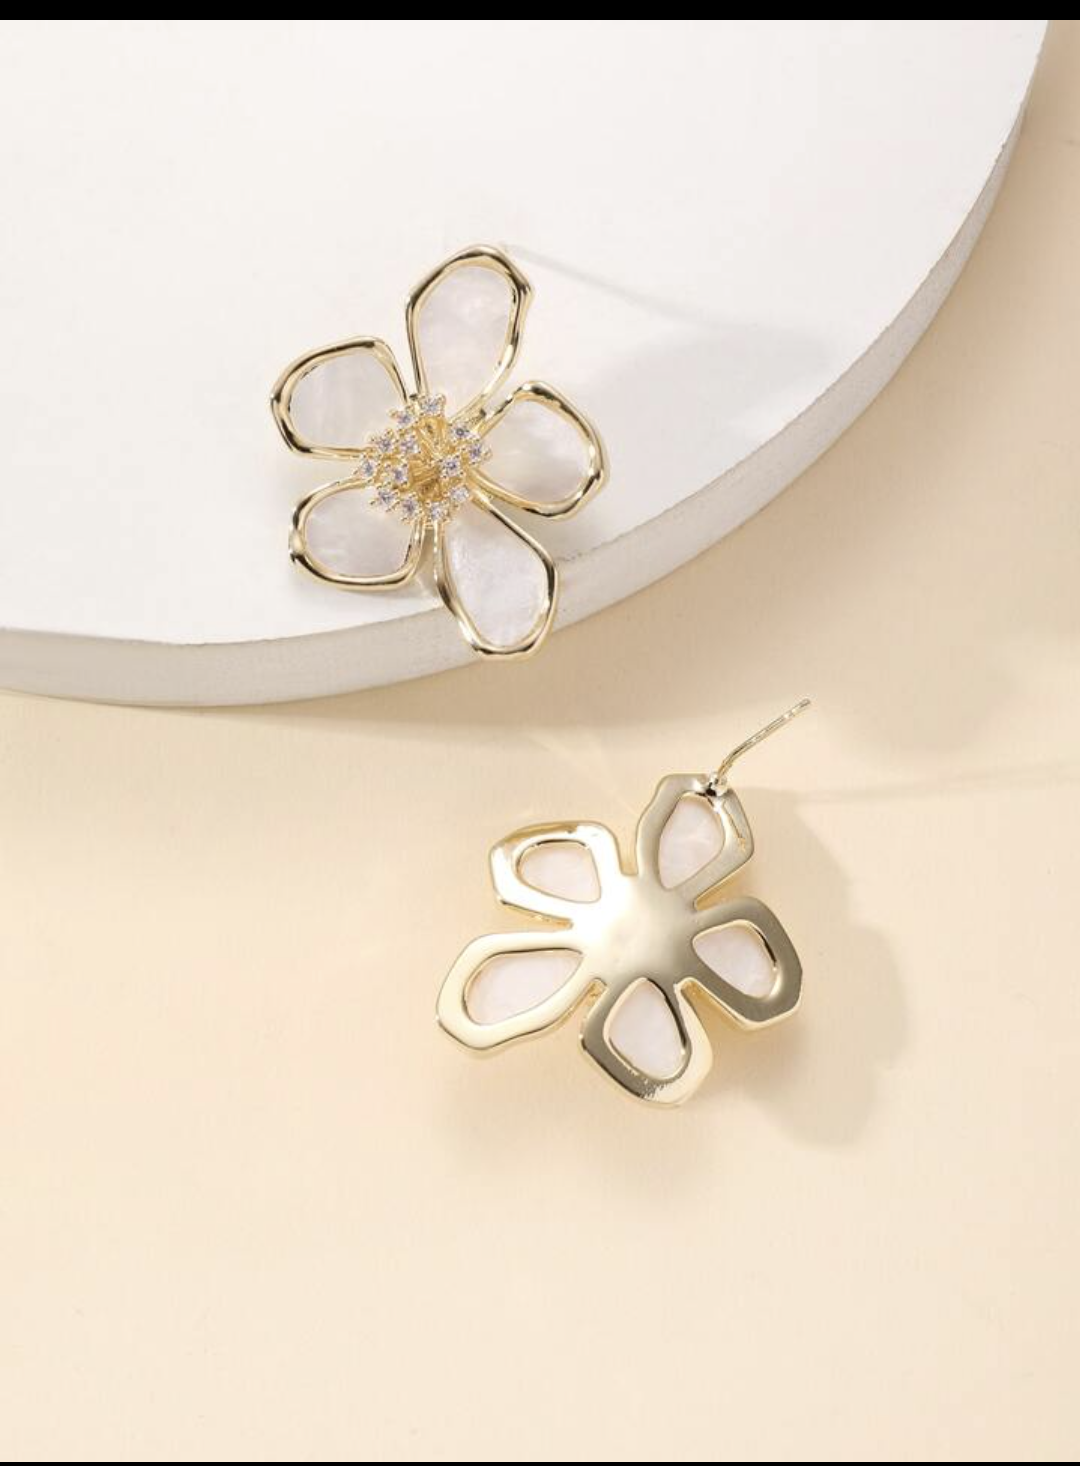 Snow Blossom Earrings